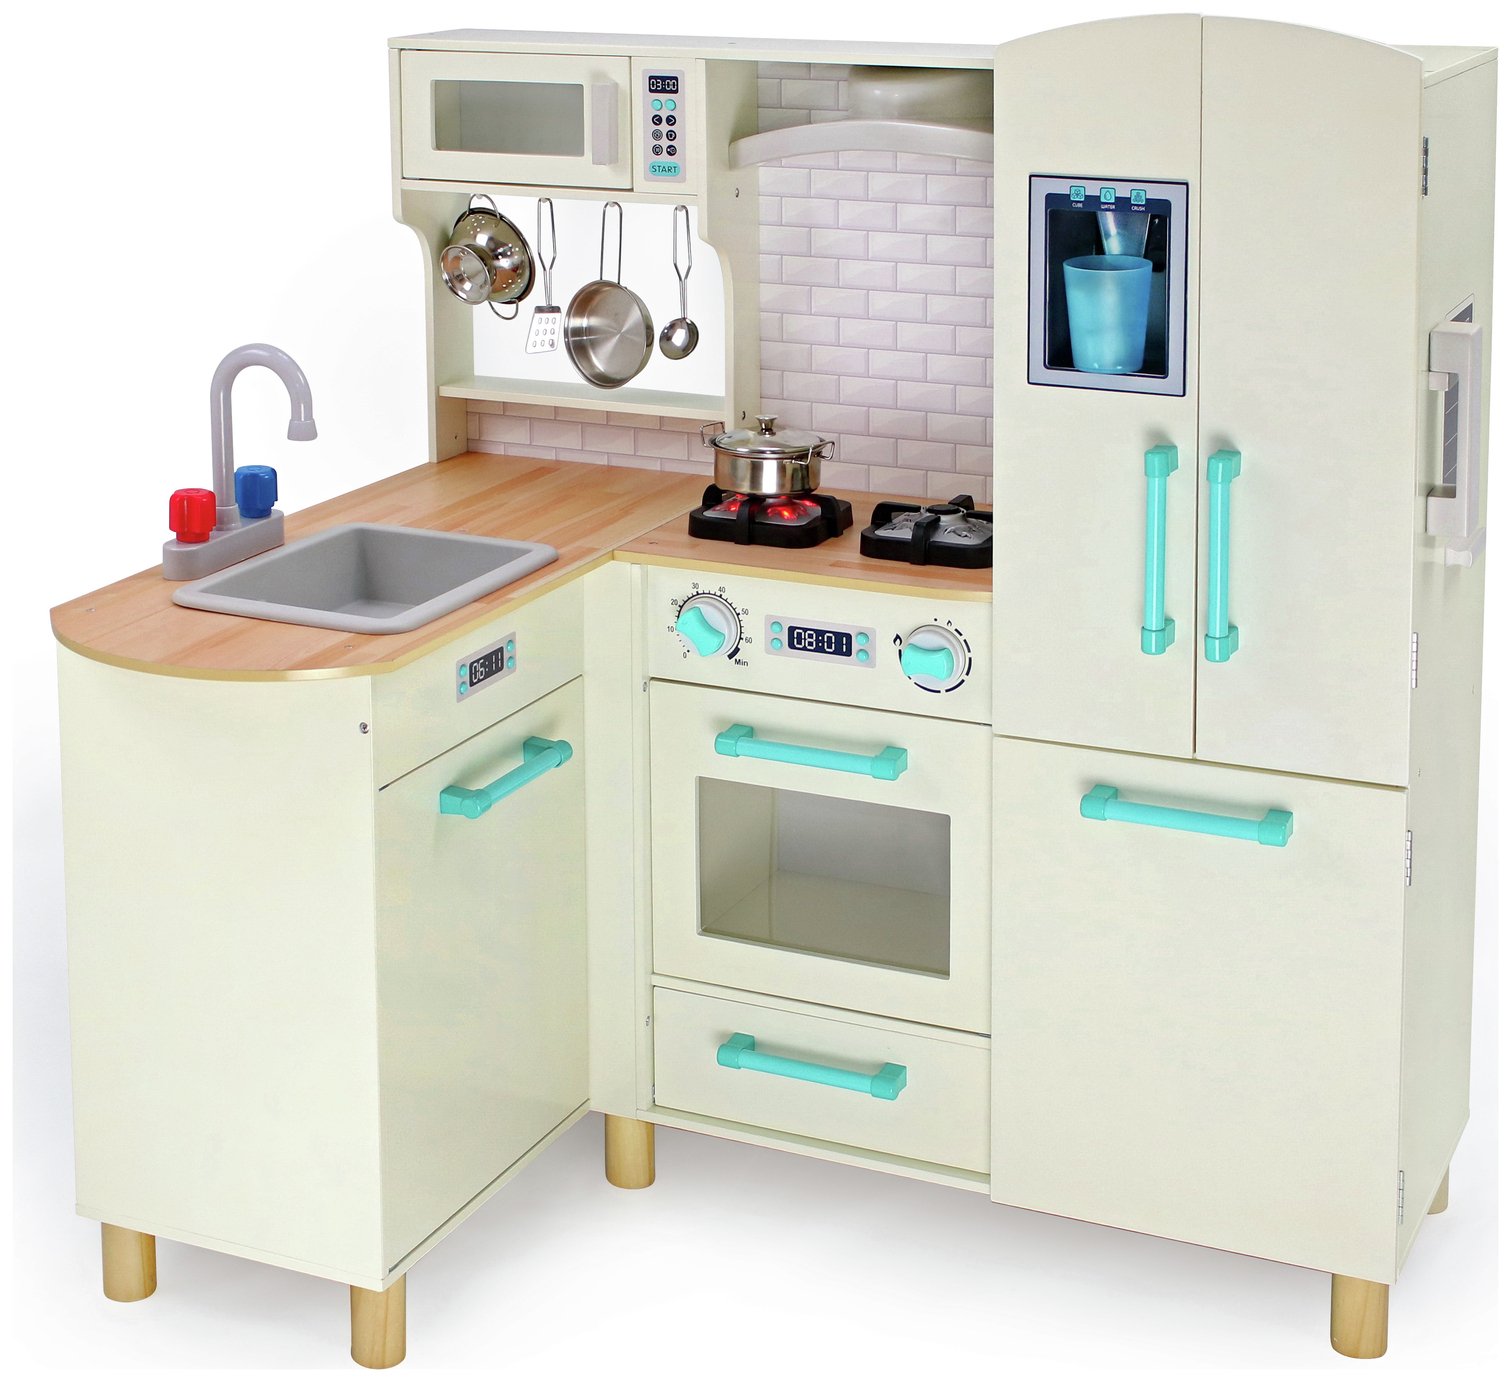 Argos Kitchen Set Toy Cheap Online